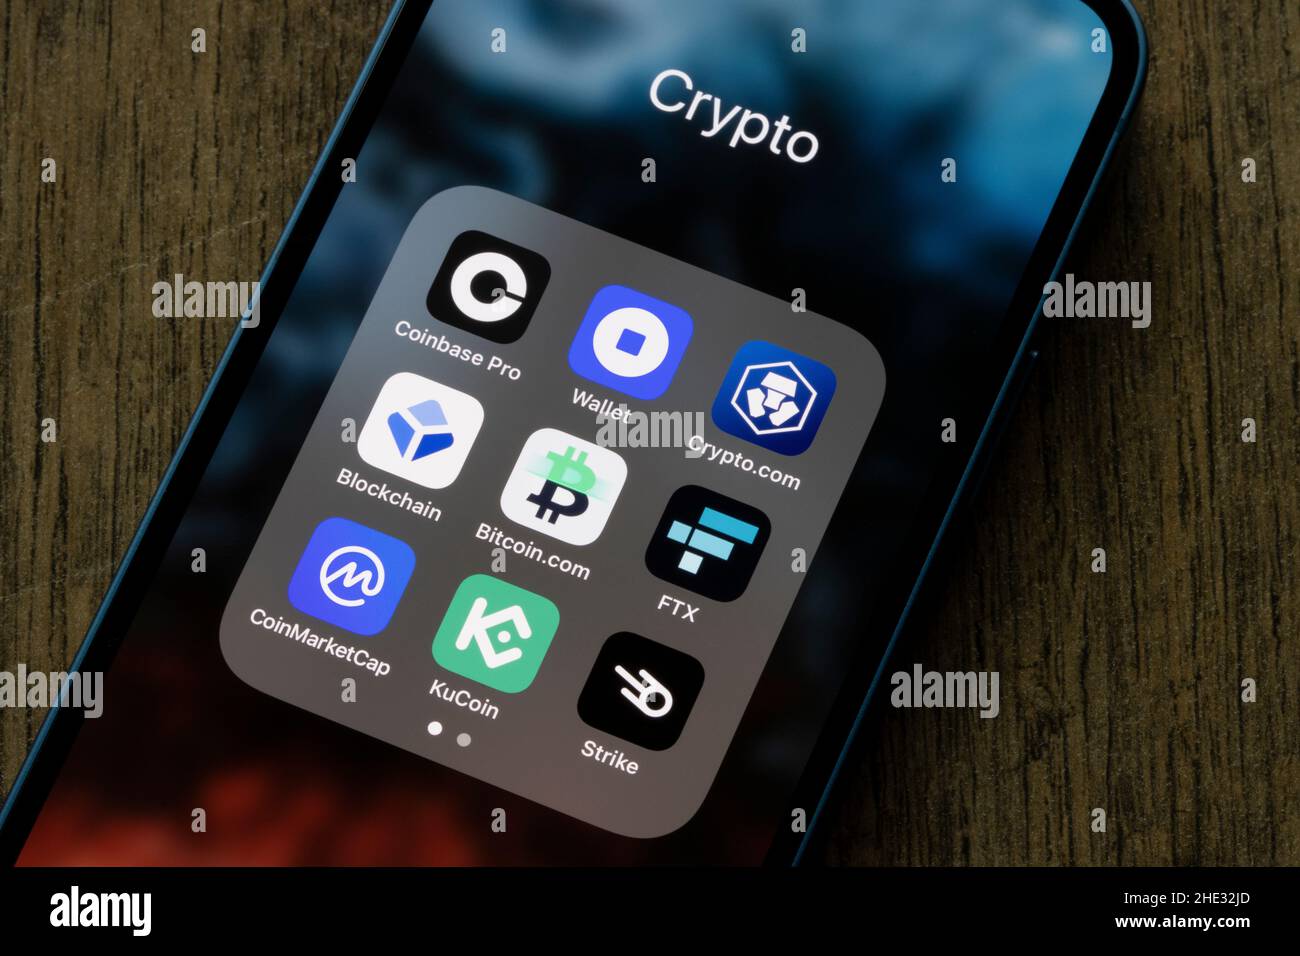 Verschiedene Krypto-Apps sind auf einem iPhone zu sehen - Coinbase Pro, Coinbase Wallet, Crypto.com, Blockchain, Bitcoin.com, FTX, Coinmarketcap, KuCoin, Strike. Stockfoto